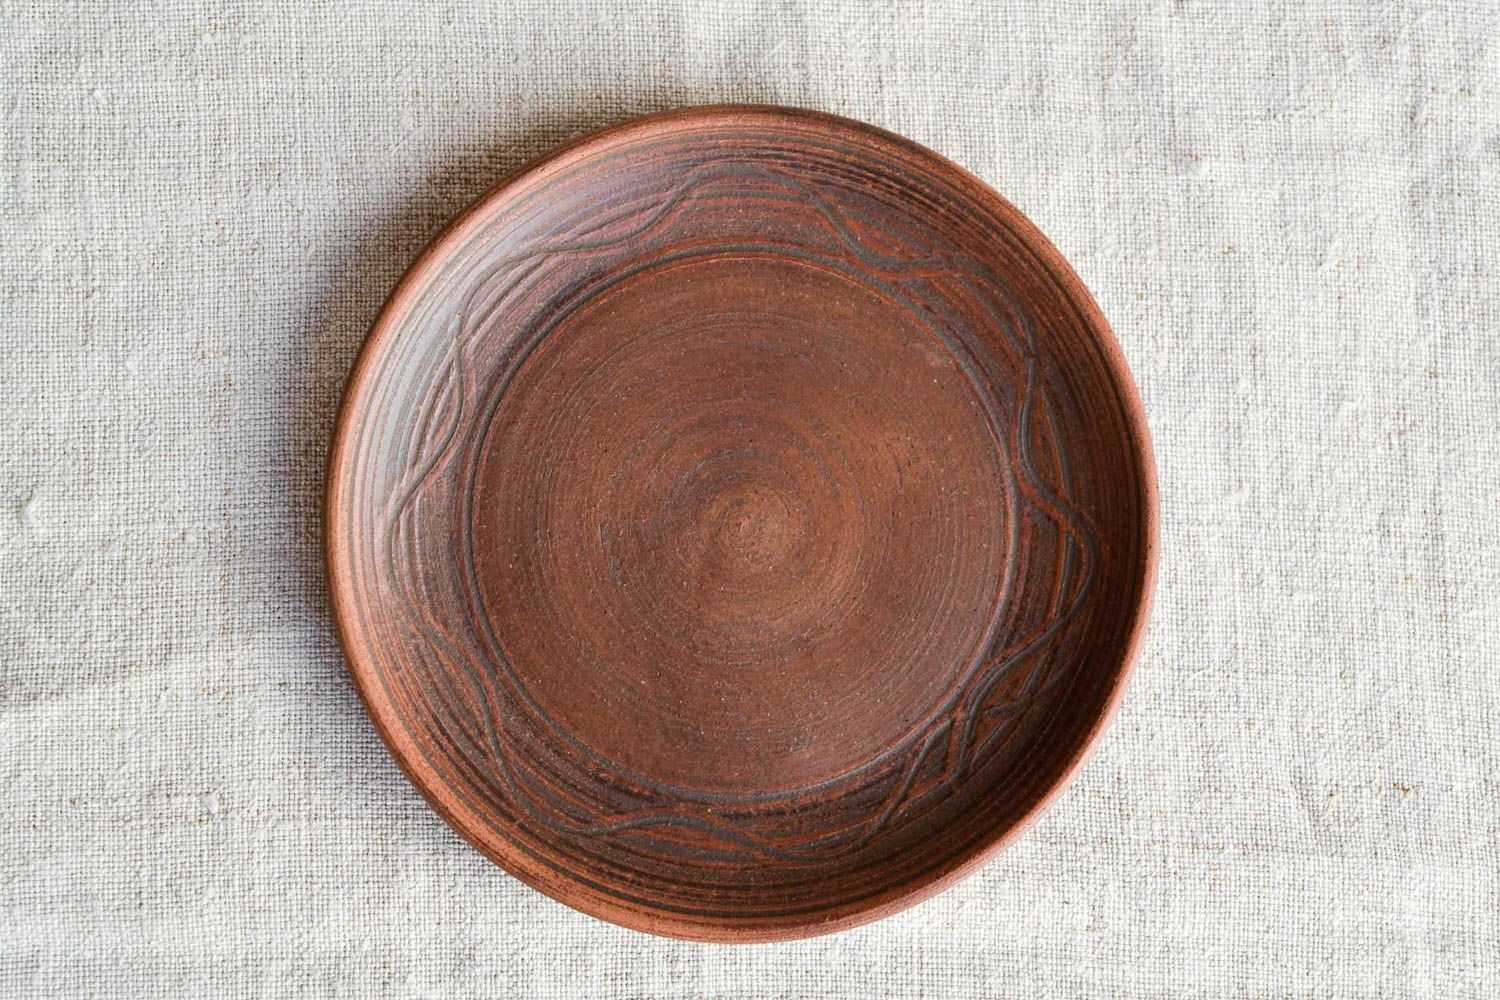 Handmade Keramik Teller Haus Dekor Design Teller Tisch Dekor klein flach schön foto 3